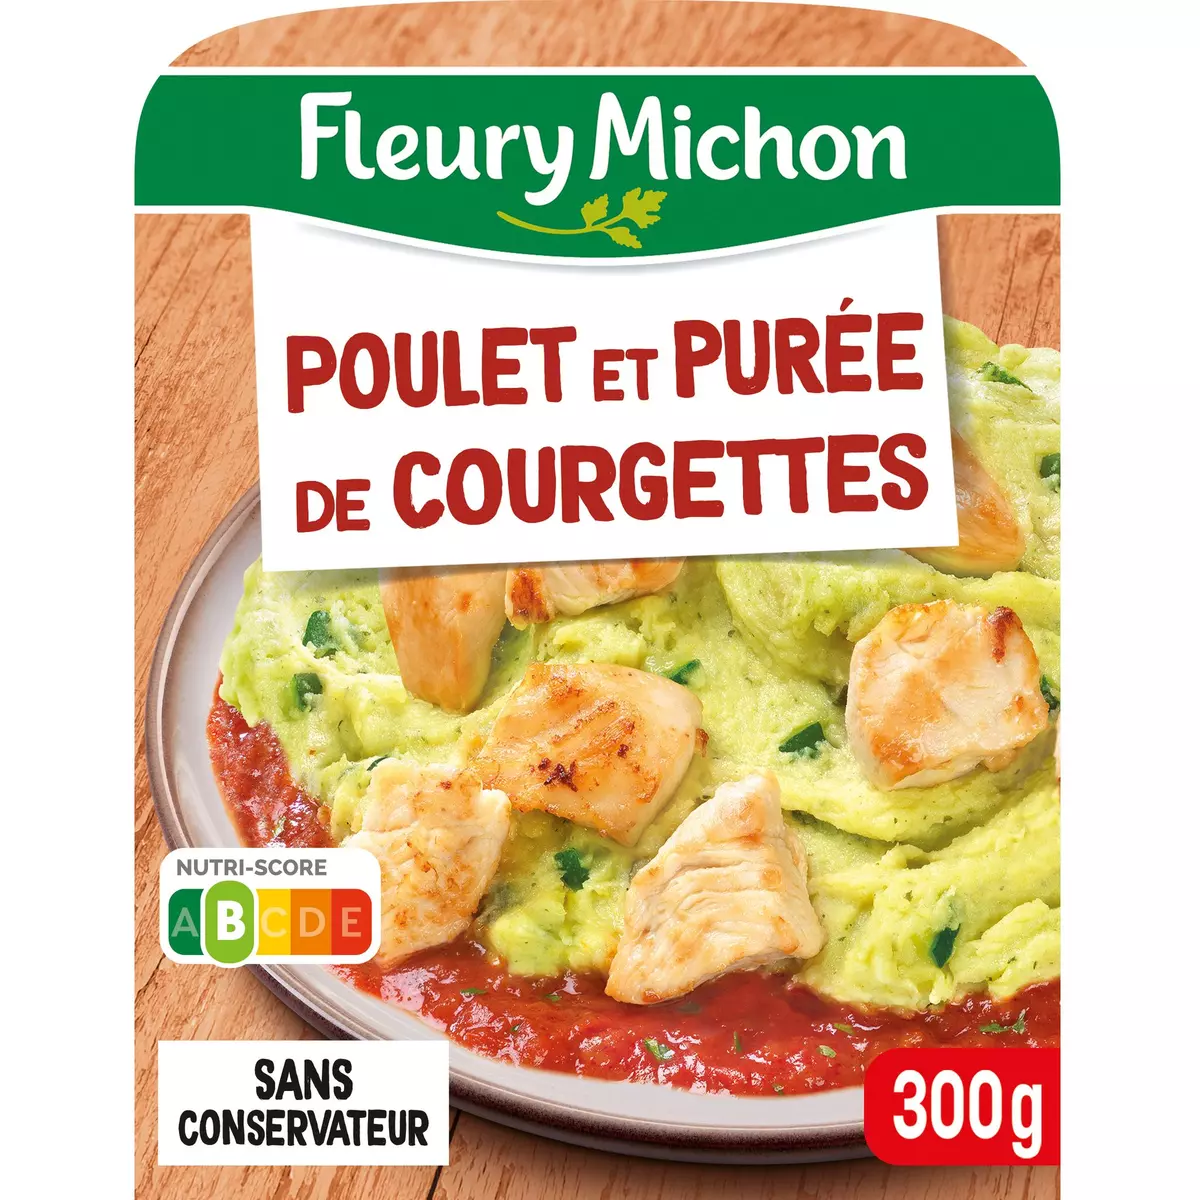 FLEURY MICHON Poulet et purée de courgettes 1 portion 300g